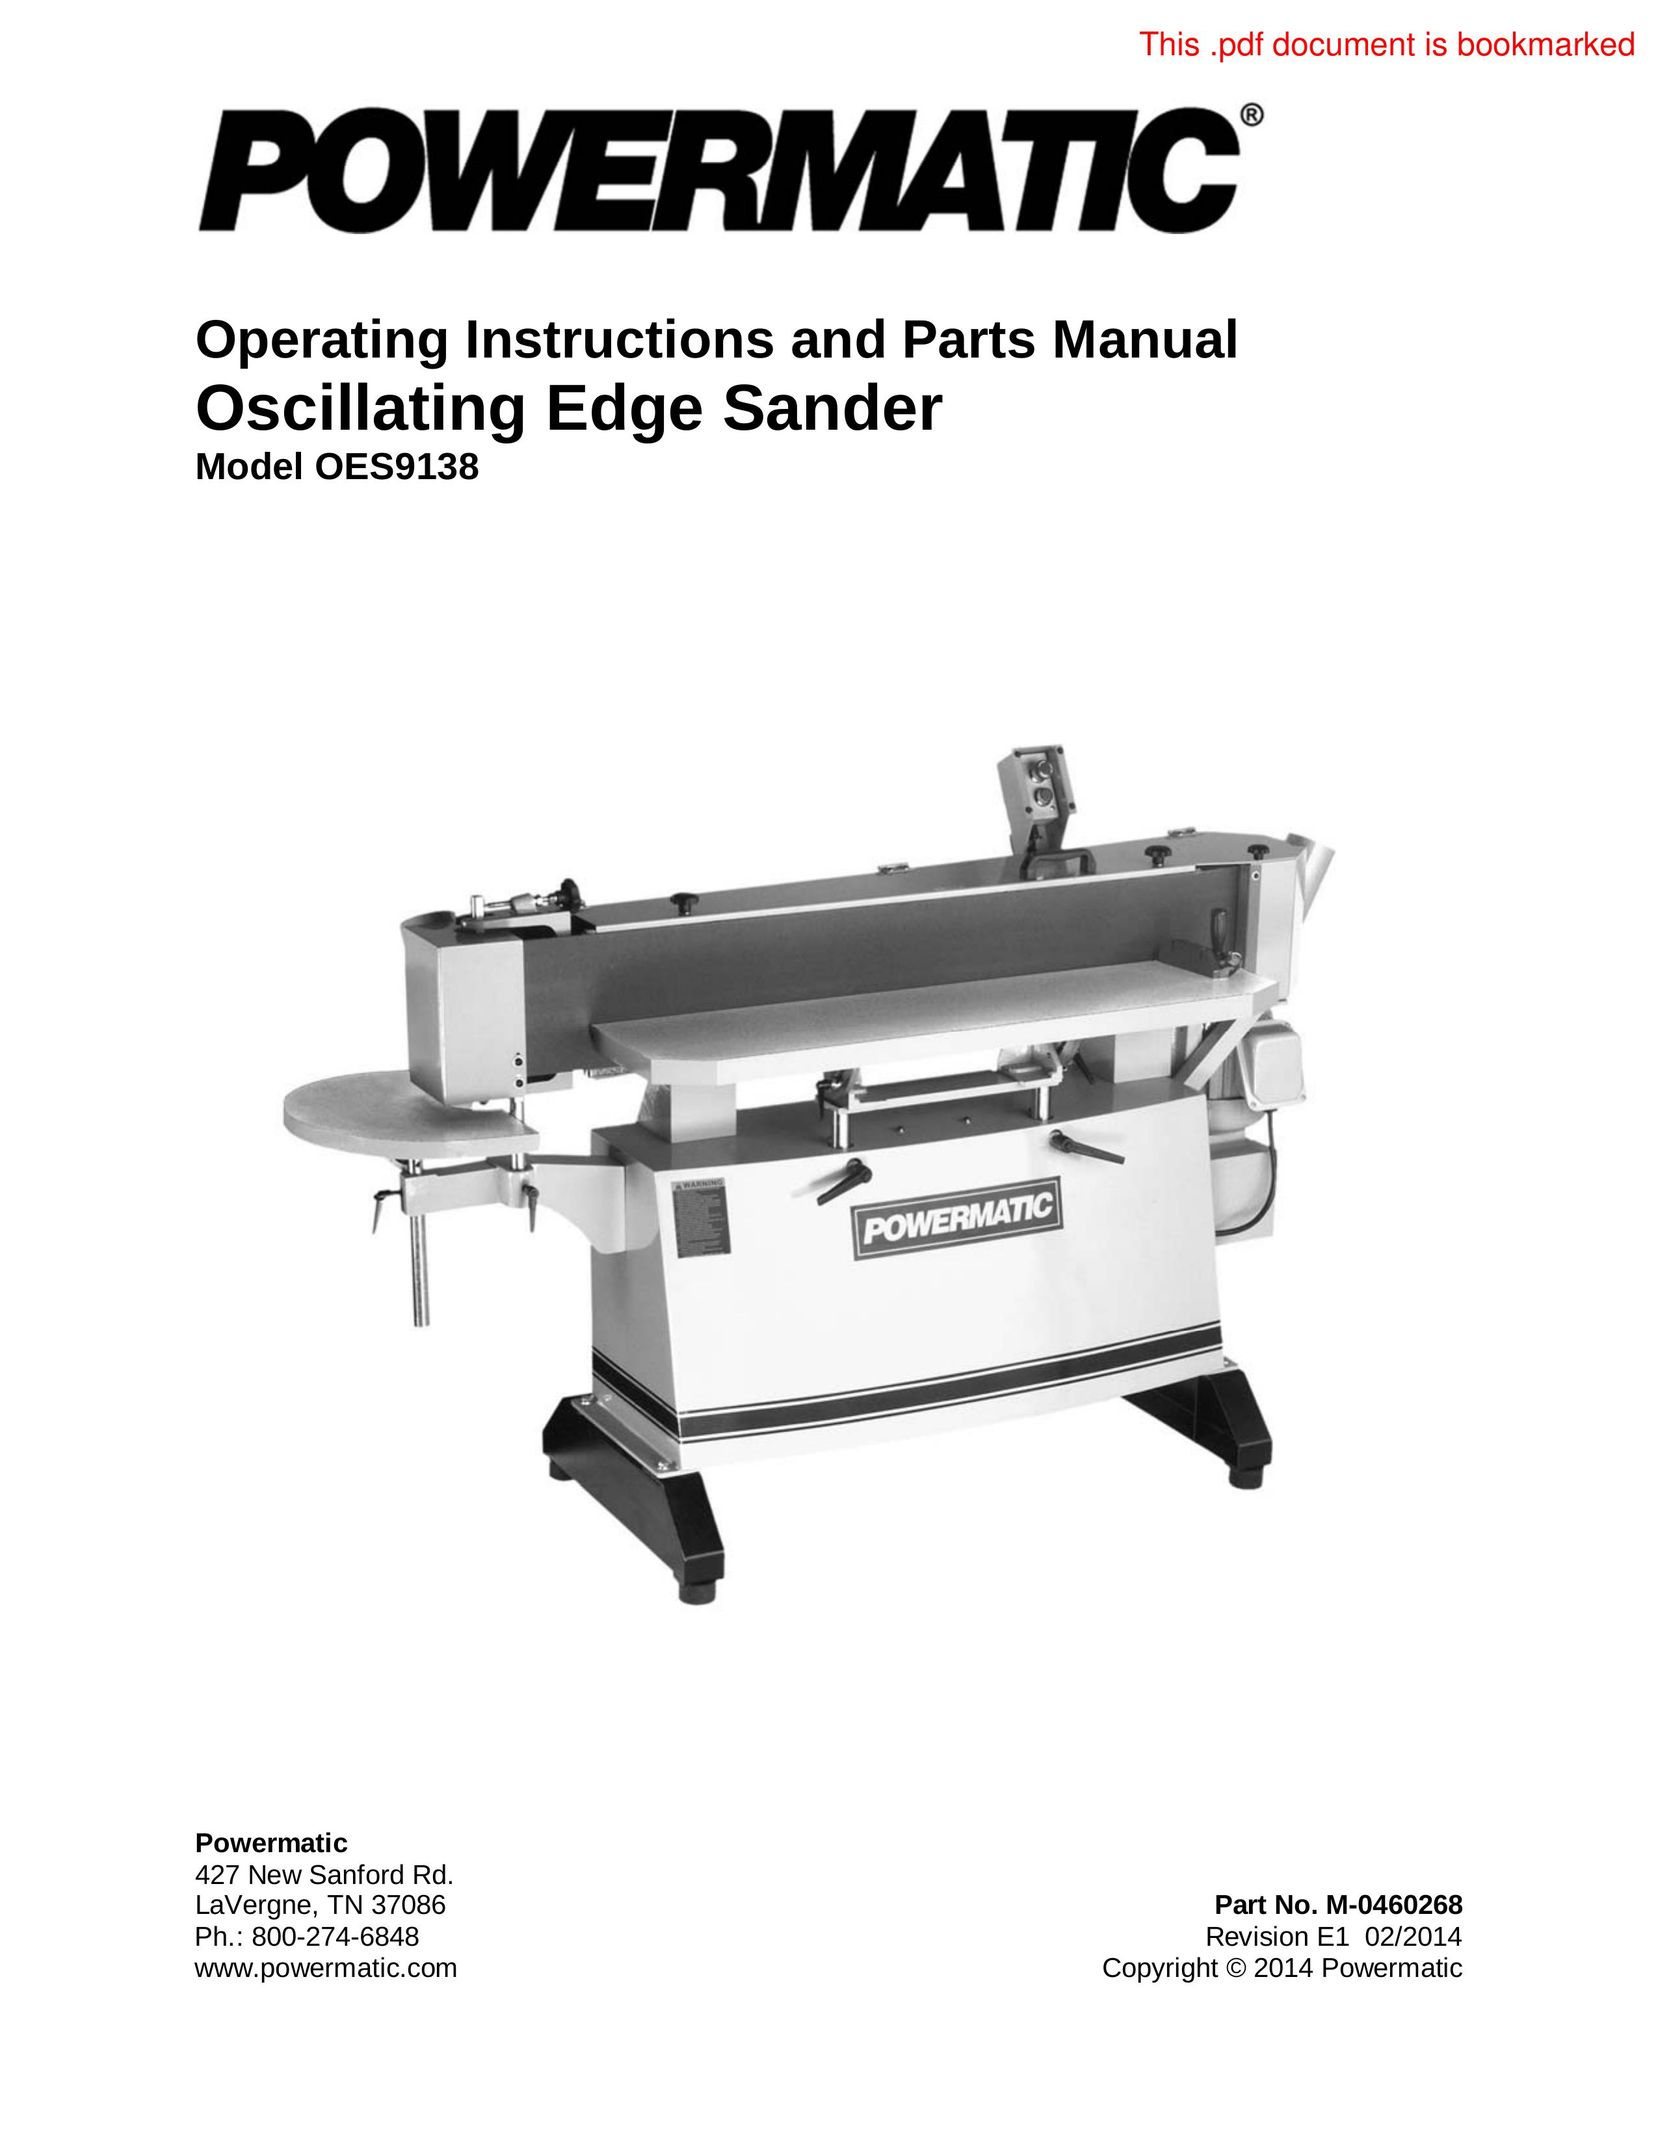 Powermatic OES9138 Cordless Sander User Manual